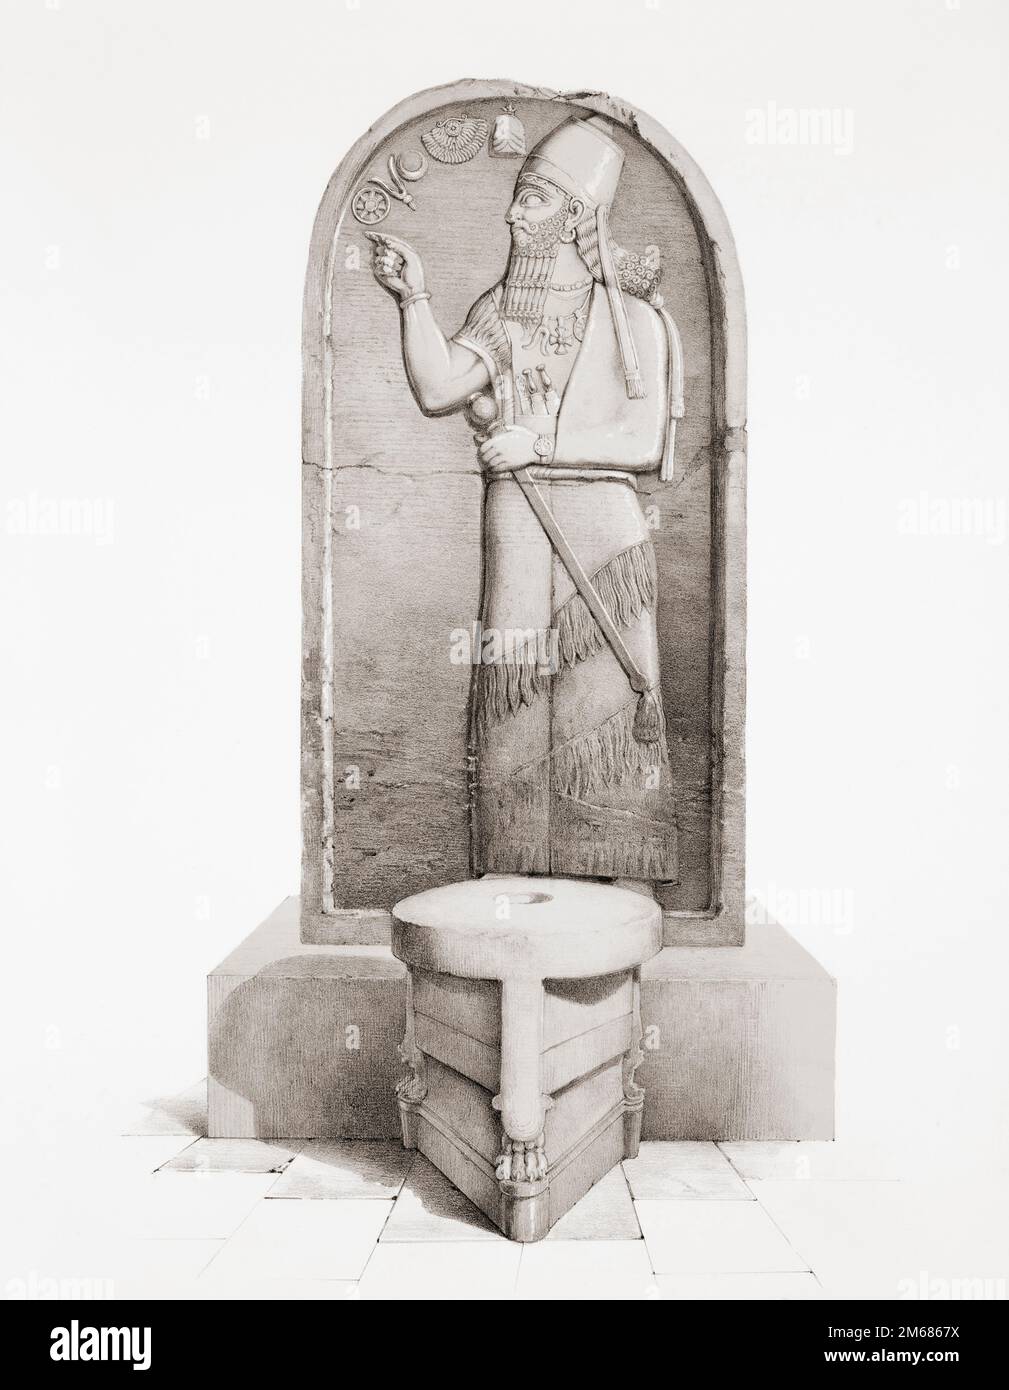 La Stela di Shamshi-Adad V dietro un altare sacrificale di Nimrud, antica Assiria, oggi Iraq. Shamshi-Adad V fu re di Assiria dal 824 al 811 a.C., anno della sua morte. La stela di arenaria alta quasi 2 metri si trova ora nel British Museum di Londra. Dopo un'opera del 19th° secolo di Sir Austen Henry Layard. Foto Stock